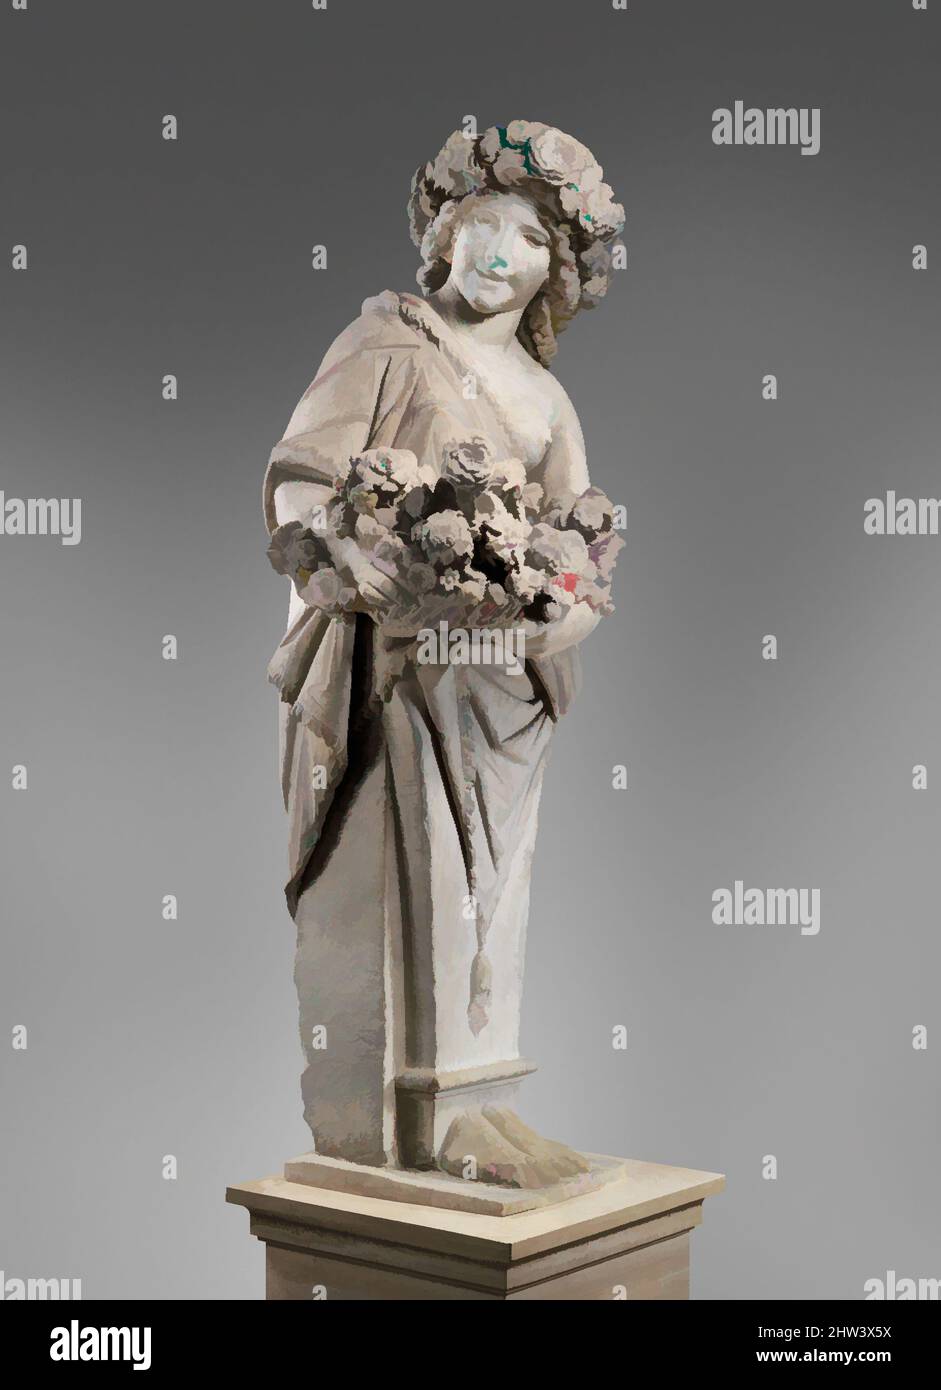 Kunst inspiriert vom Frühling in der Gestalt von Flora (einer von einem Paar), 1616–17, Italienisch, Rom, Marmor, Insgesamt (bestätigt): 89 1/8 × 34 3/8 × 27 1/2 Zoll, 2507 lb. (226,4 × 87,3 × 69,9 cm, 1137,2 kg), Skulptur, Pietro Bernini (Italienisch, 1562–1629), Unterstützt von Gian Lorenzo Bernini (Italienisch, Klassische Werke, die von Artotop mit einem Schuss Moderne modernisiert wurden. Formen, Farbe und Wert, auffällige visuelle Wirkung auf Kunst. Emotionen durch Freiheit von Kunstwerken auf zeitgemäße Weise. Eine zeitlose Botschaft, die eine wild kreative neue Richtung verfolgt. Künstler, die sich dem digitalen Medium zuwenden und die Artotop NFT erschaffen Stockfoto